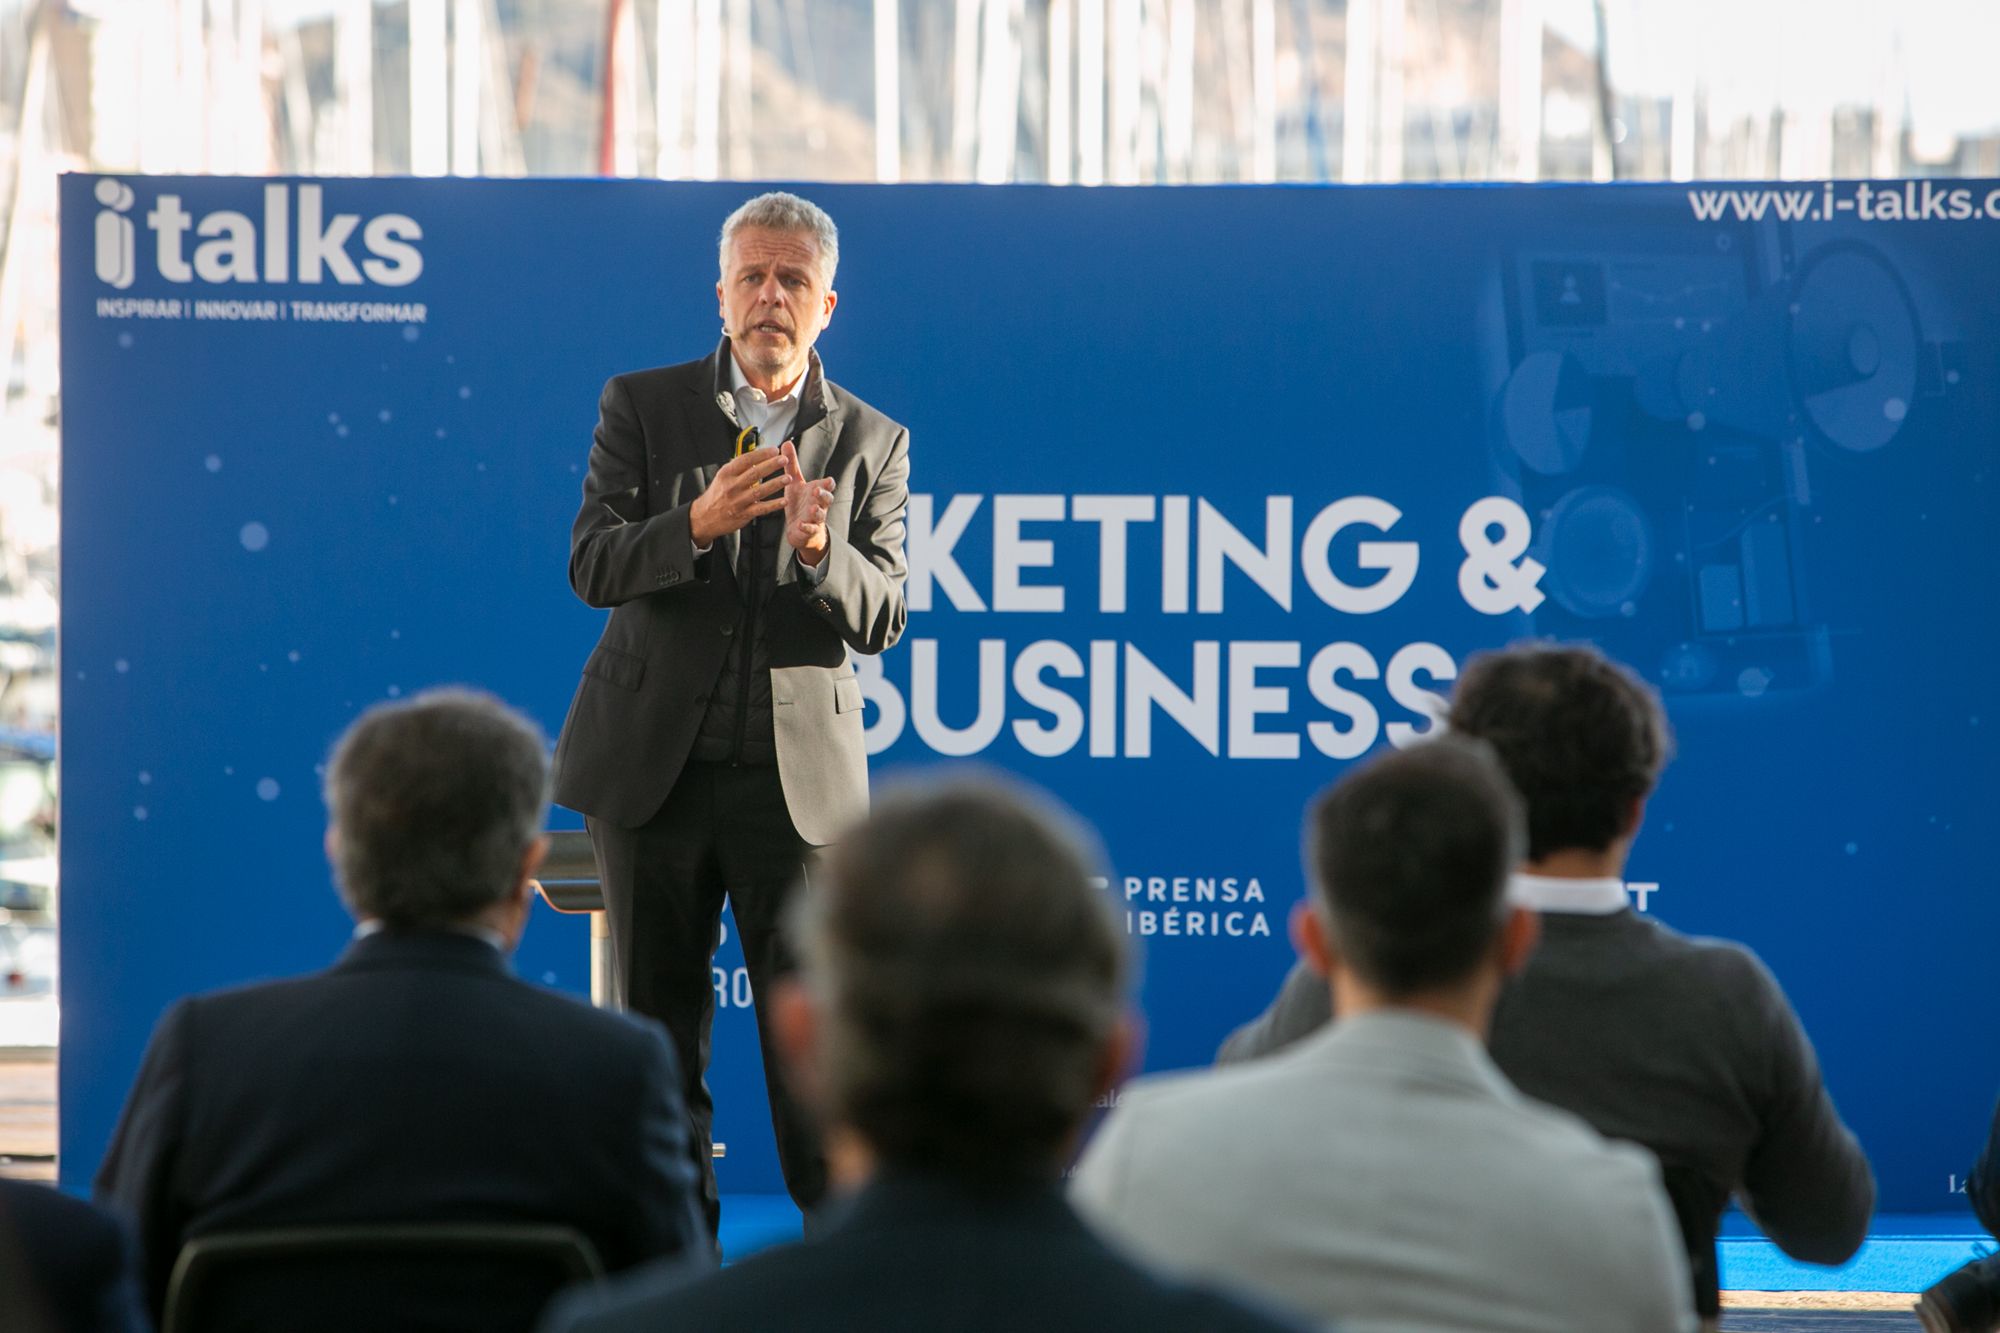 Las imágenes del último i-Talks sobre marketing y e-business en Alicante